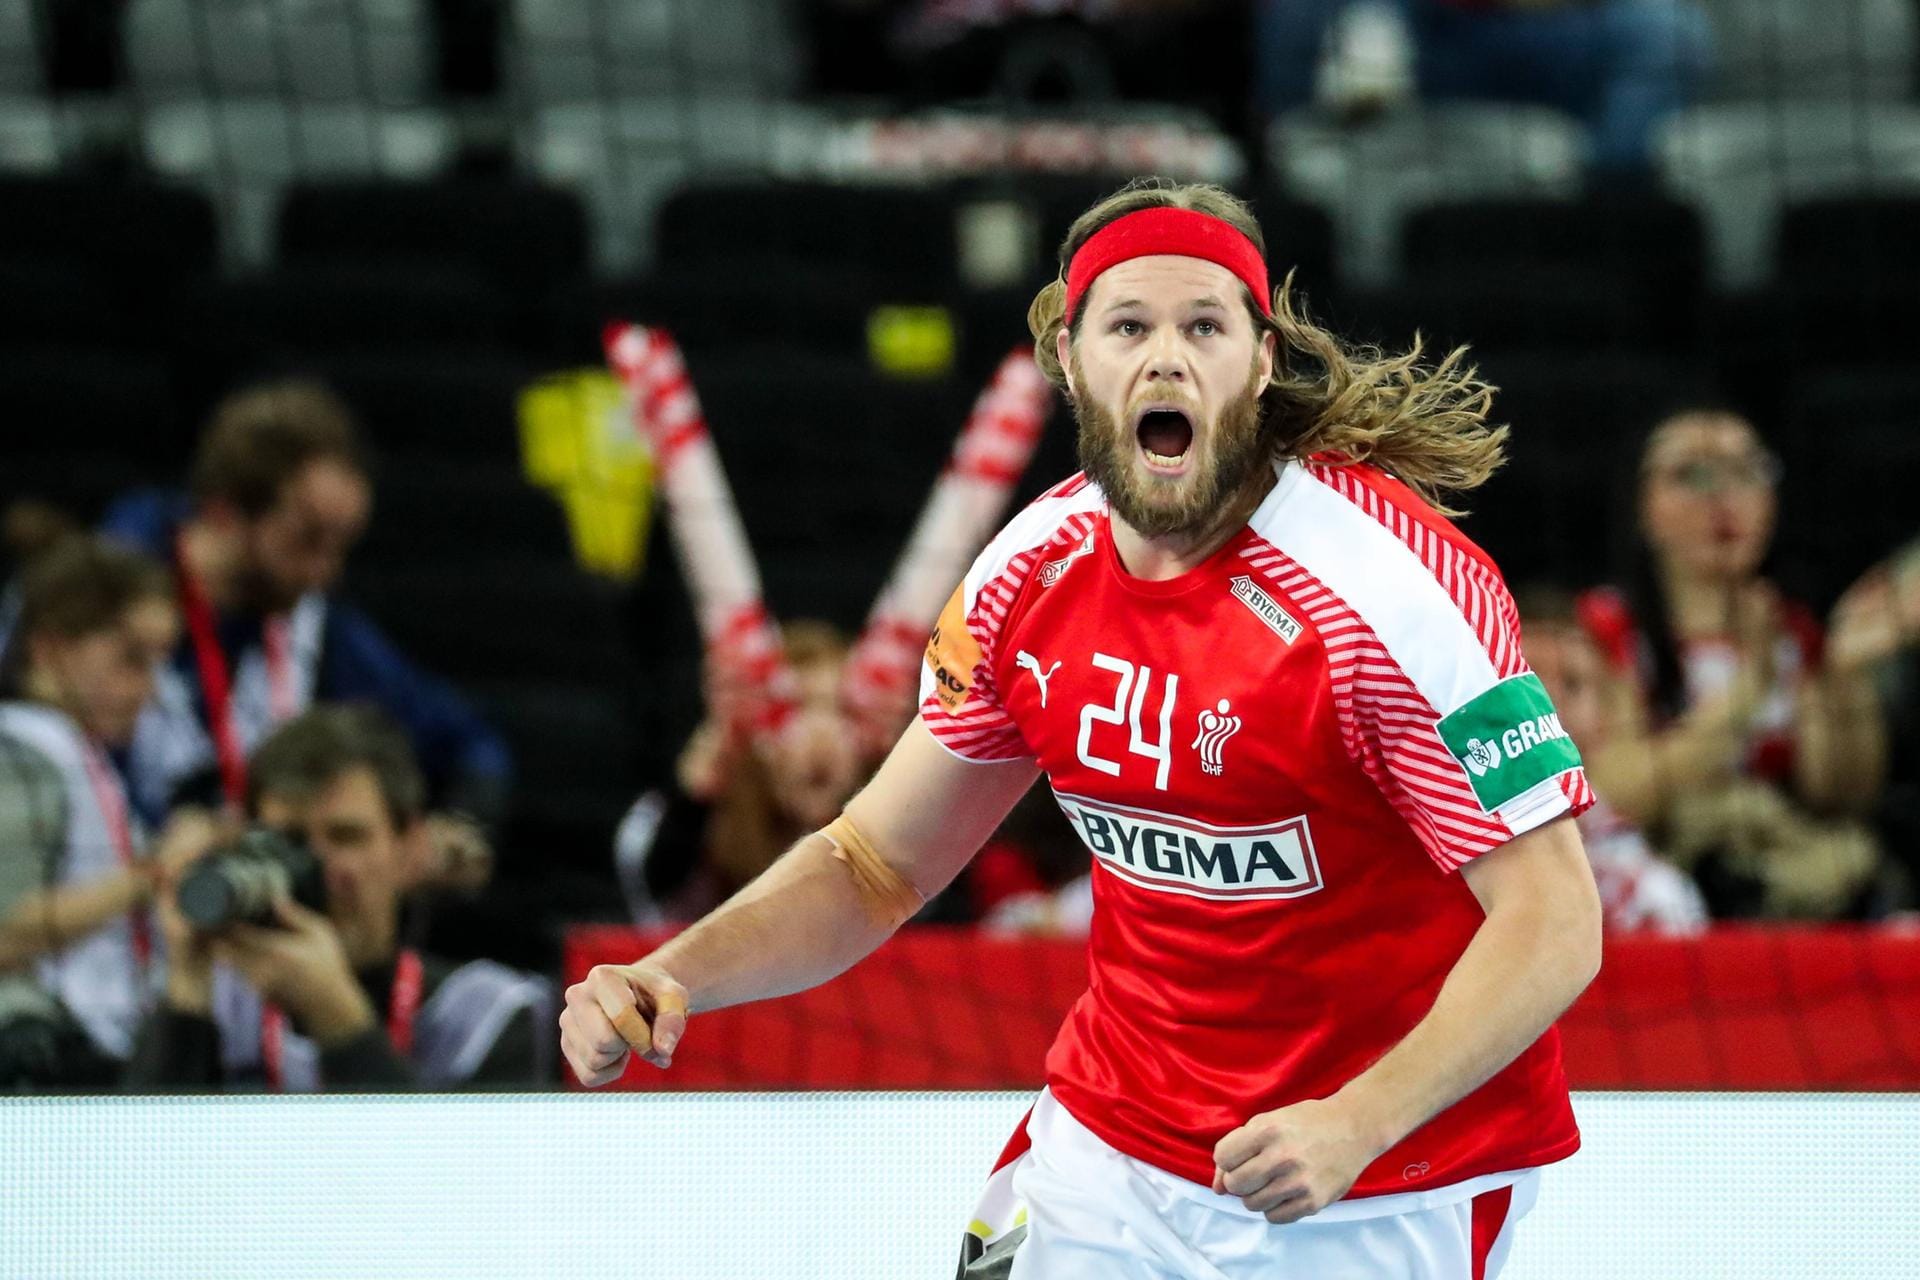 Dänemark: Bei der letzten WM patzte der Olympiasieger. Jetzt wollen Mikkel Hansen und Co. den Pokal.